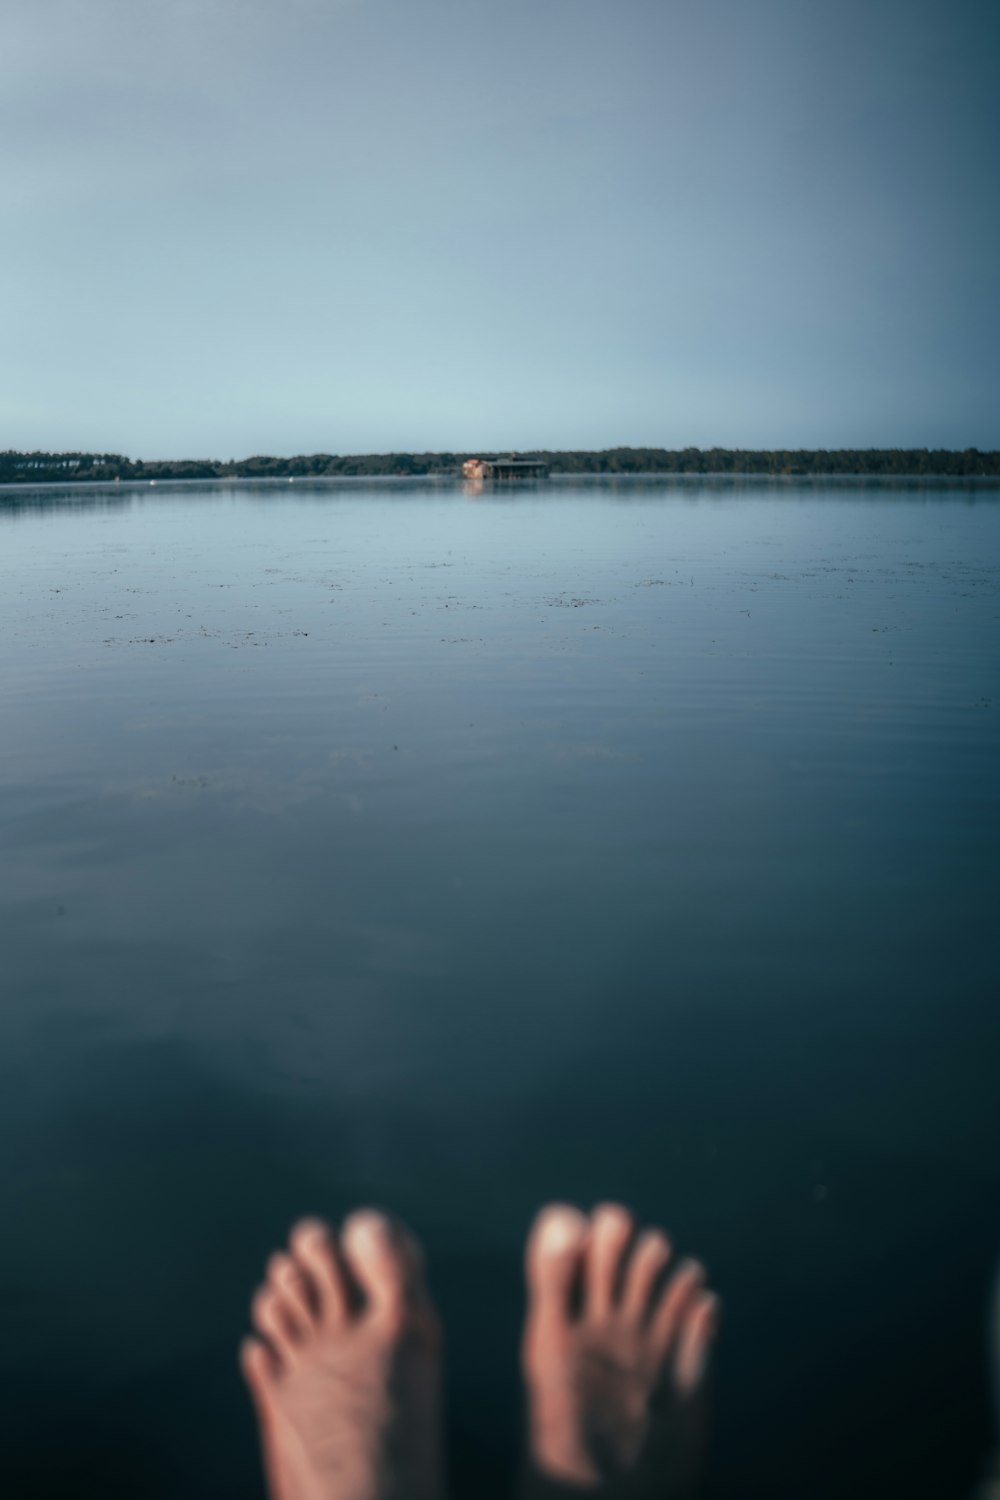 Los pies de una persona en el agua con una casa en la distancia